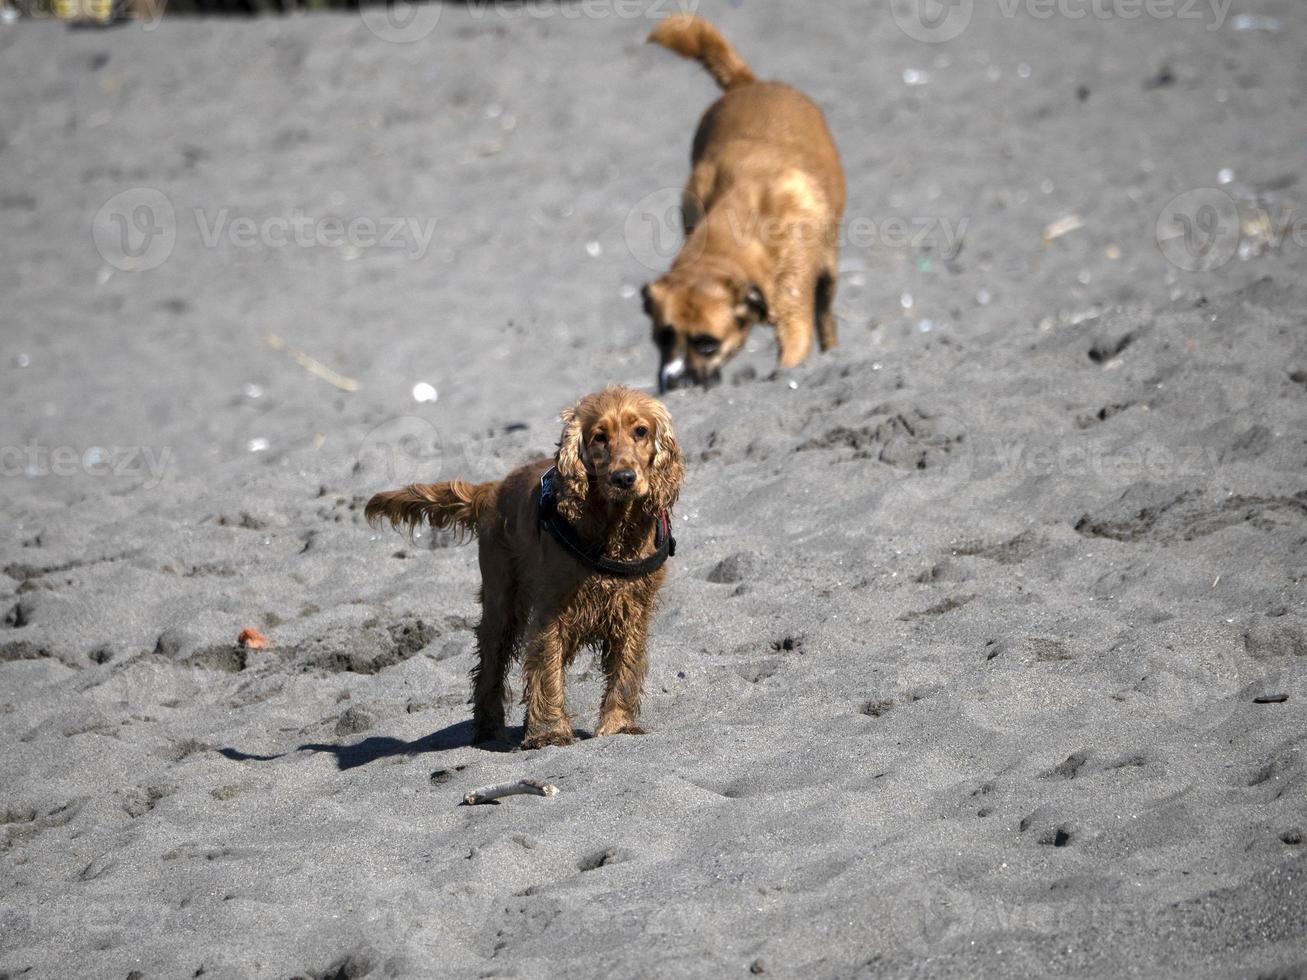 contento cane cocker spaniel giocando a il spiaggia foto